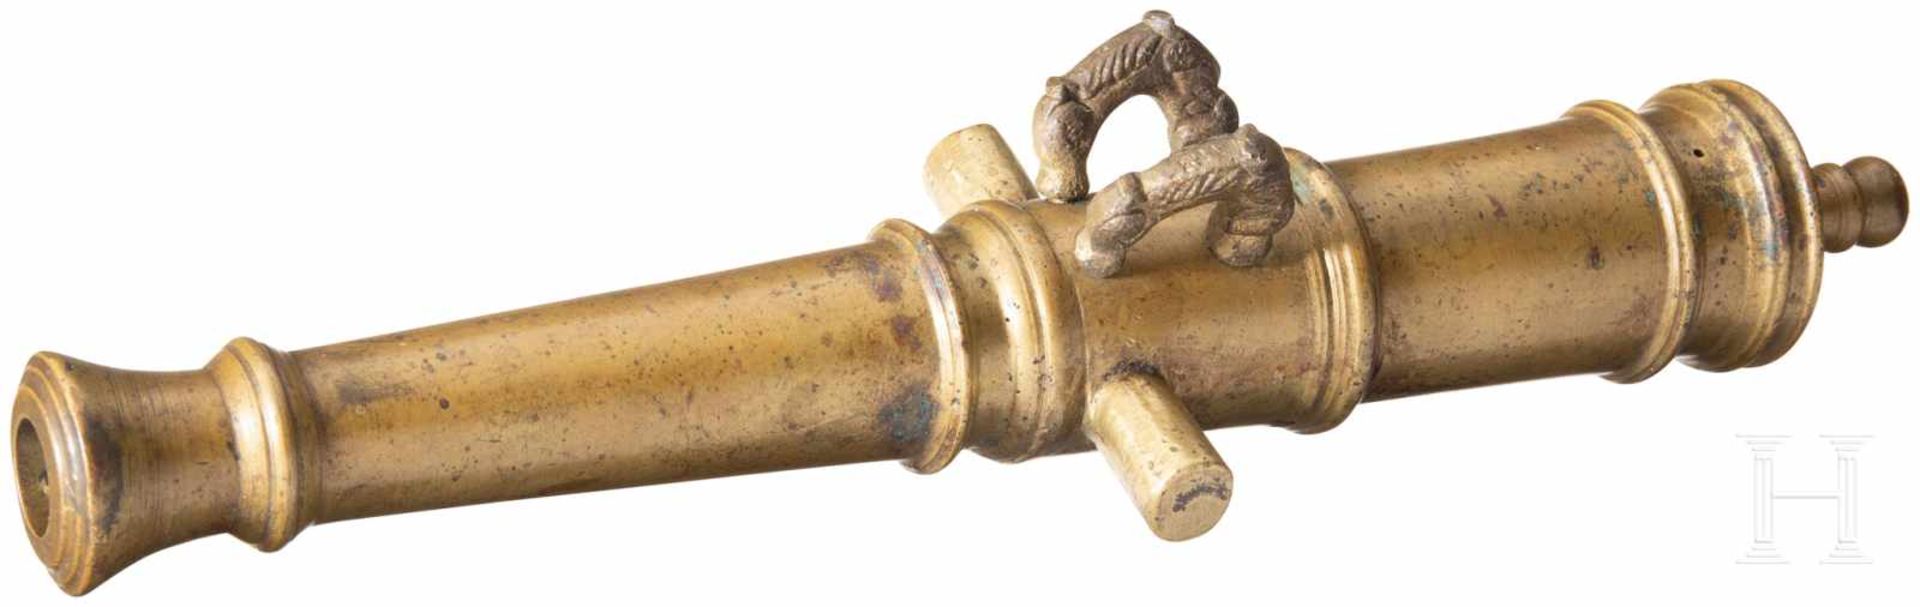 Miniatur-Kanonenrohr, europäisch, 19. Jhdt.Konisches, balusterabgesetztes Bronzerohr im Kaliber 19